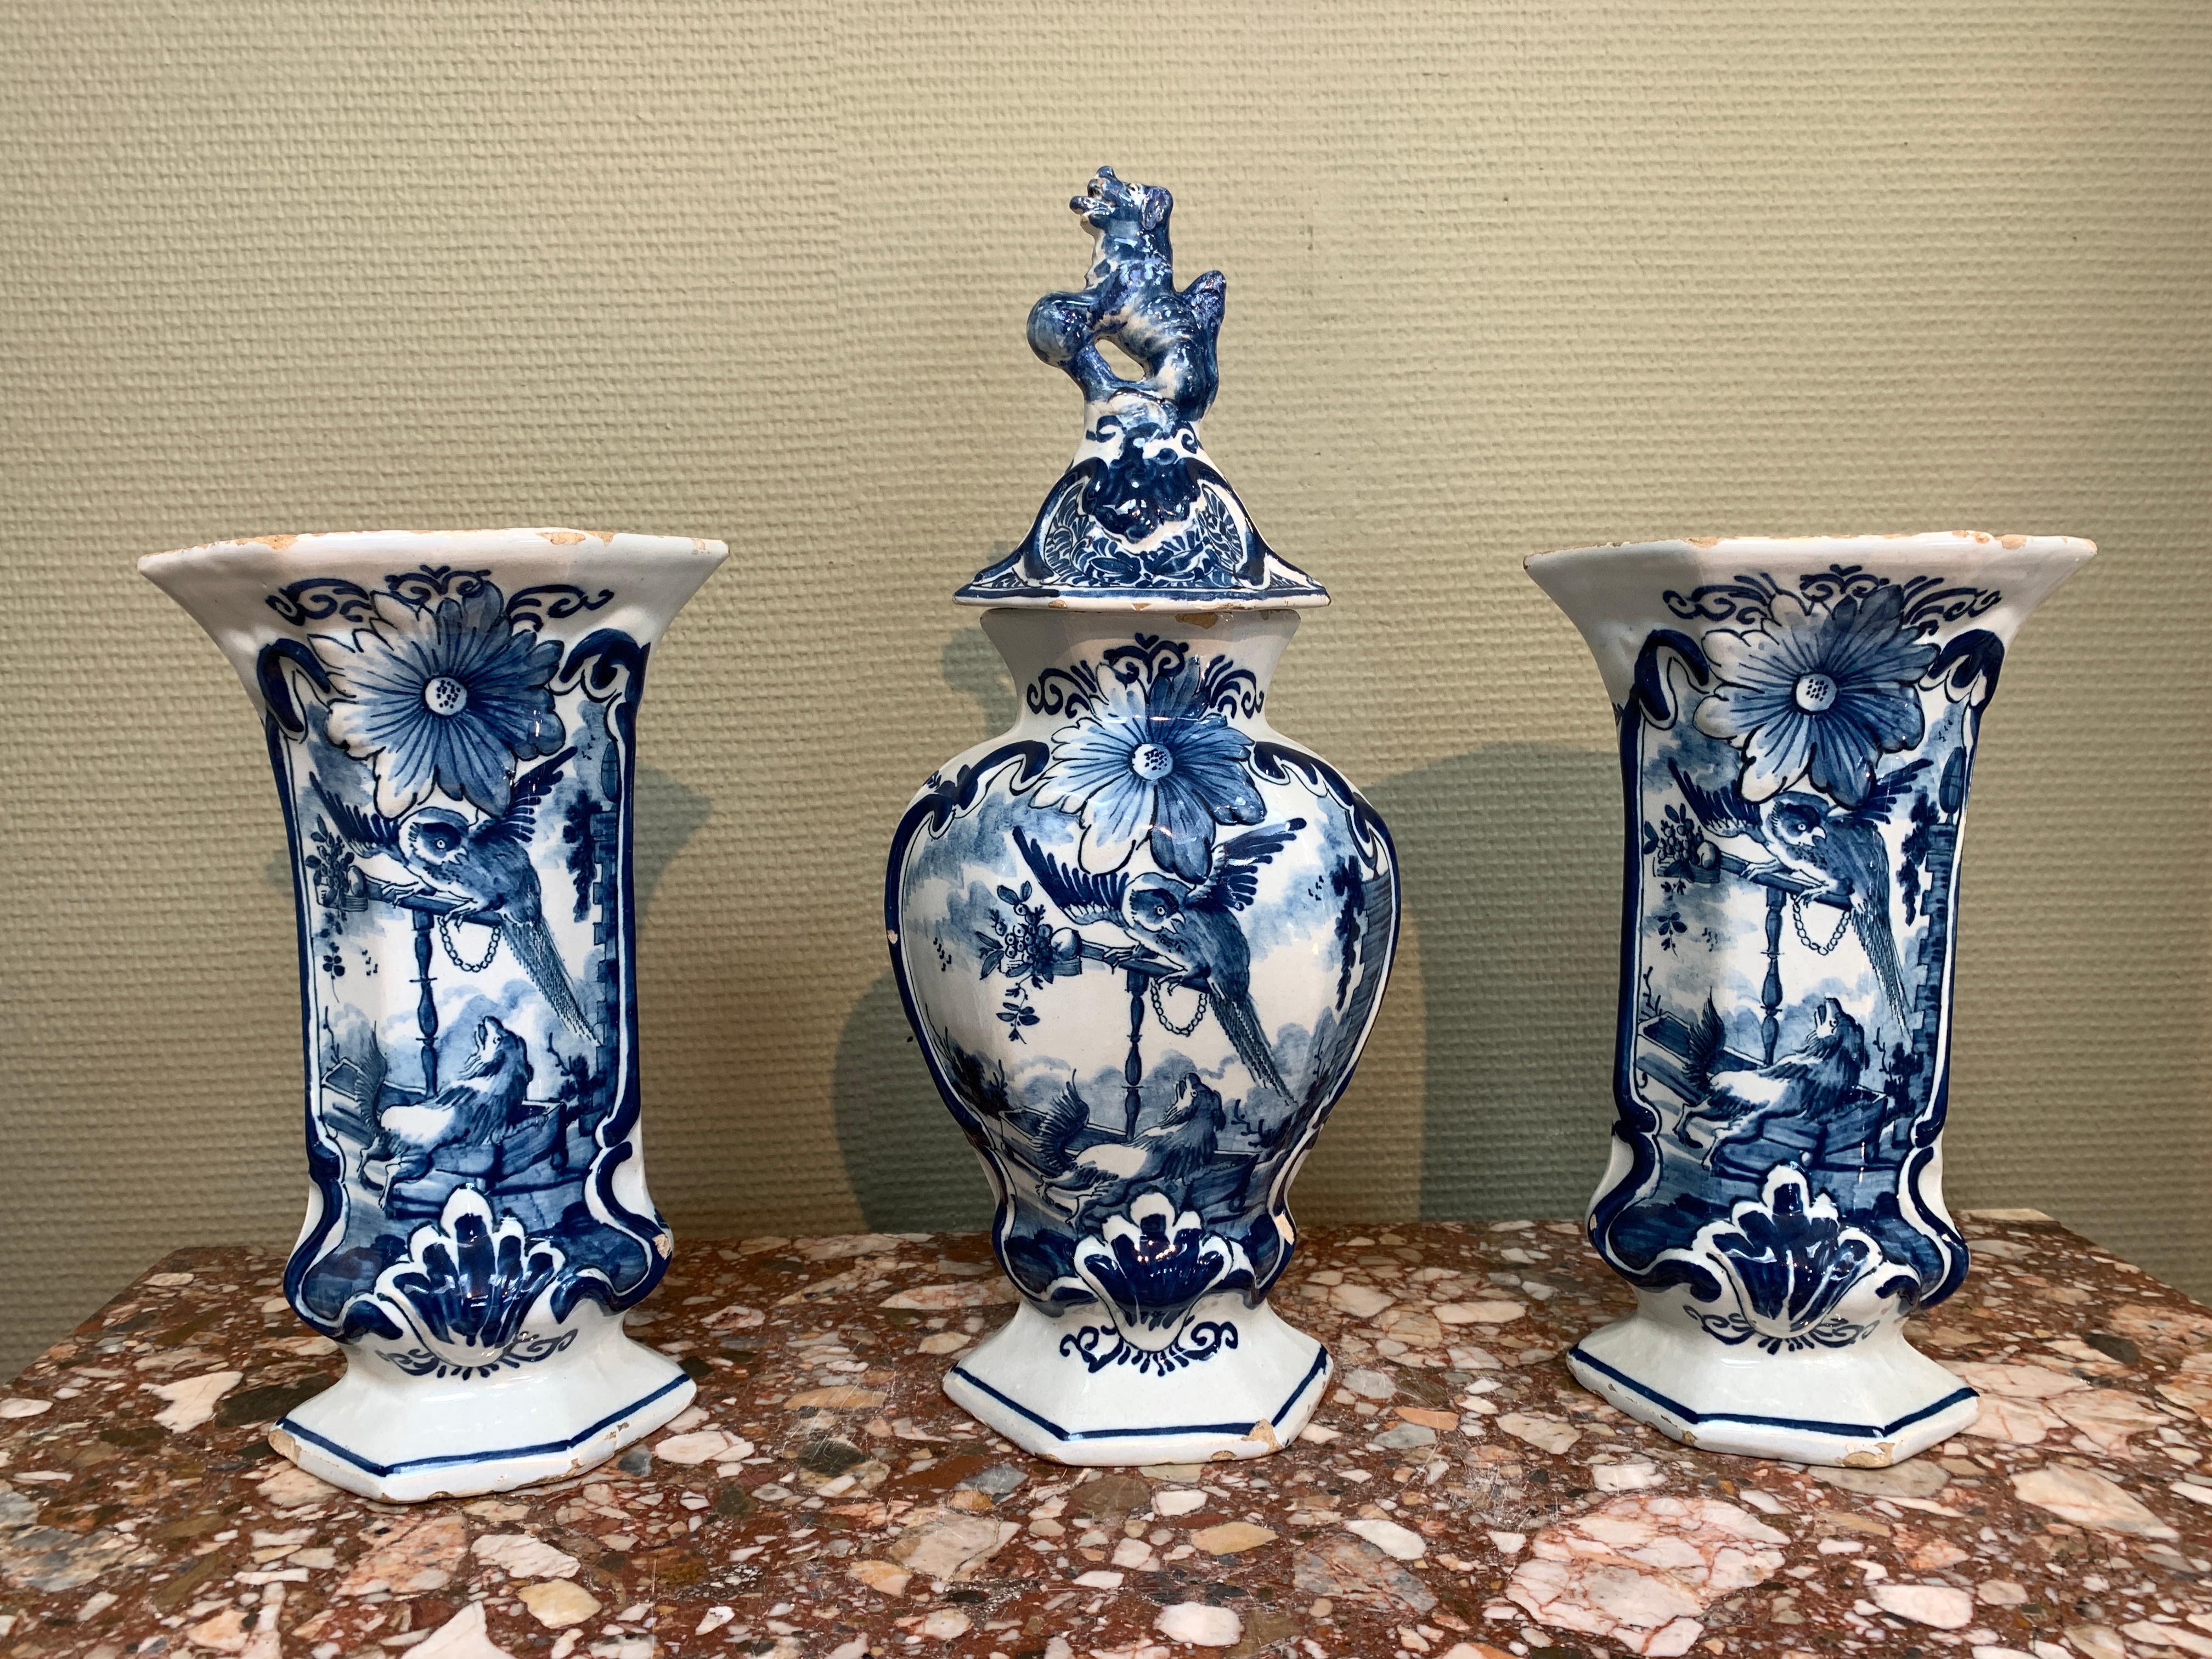 Eine holländische Delft-Garnitur, bestehend aus zwei seitlichen und einer mittleren Vase, verziert mit einem Hund und einem Papagei.

Herkunft: Delft, die Niederlande
Datum: 1763 - 1806
Workshop: De Porceleyne Clauw
Eigentümer: Lambertus